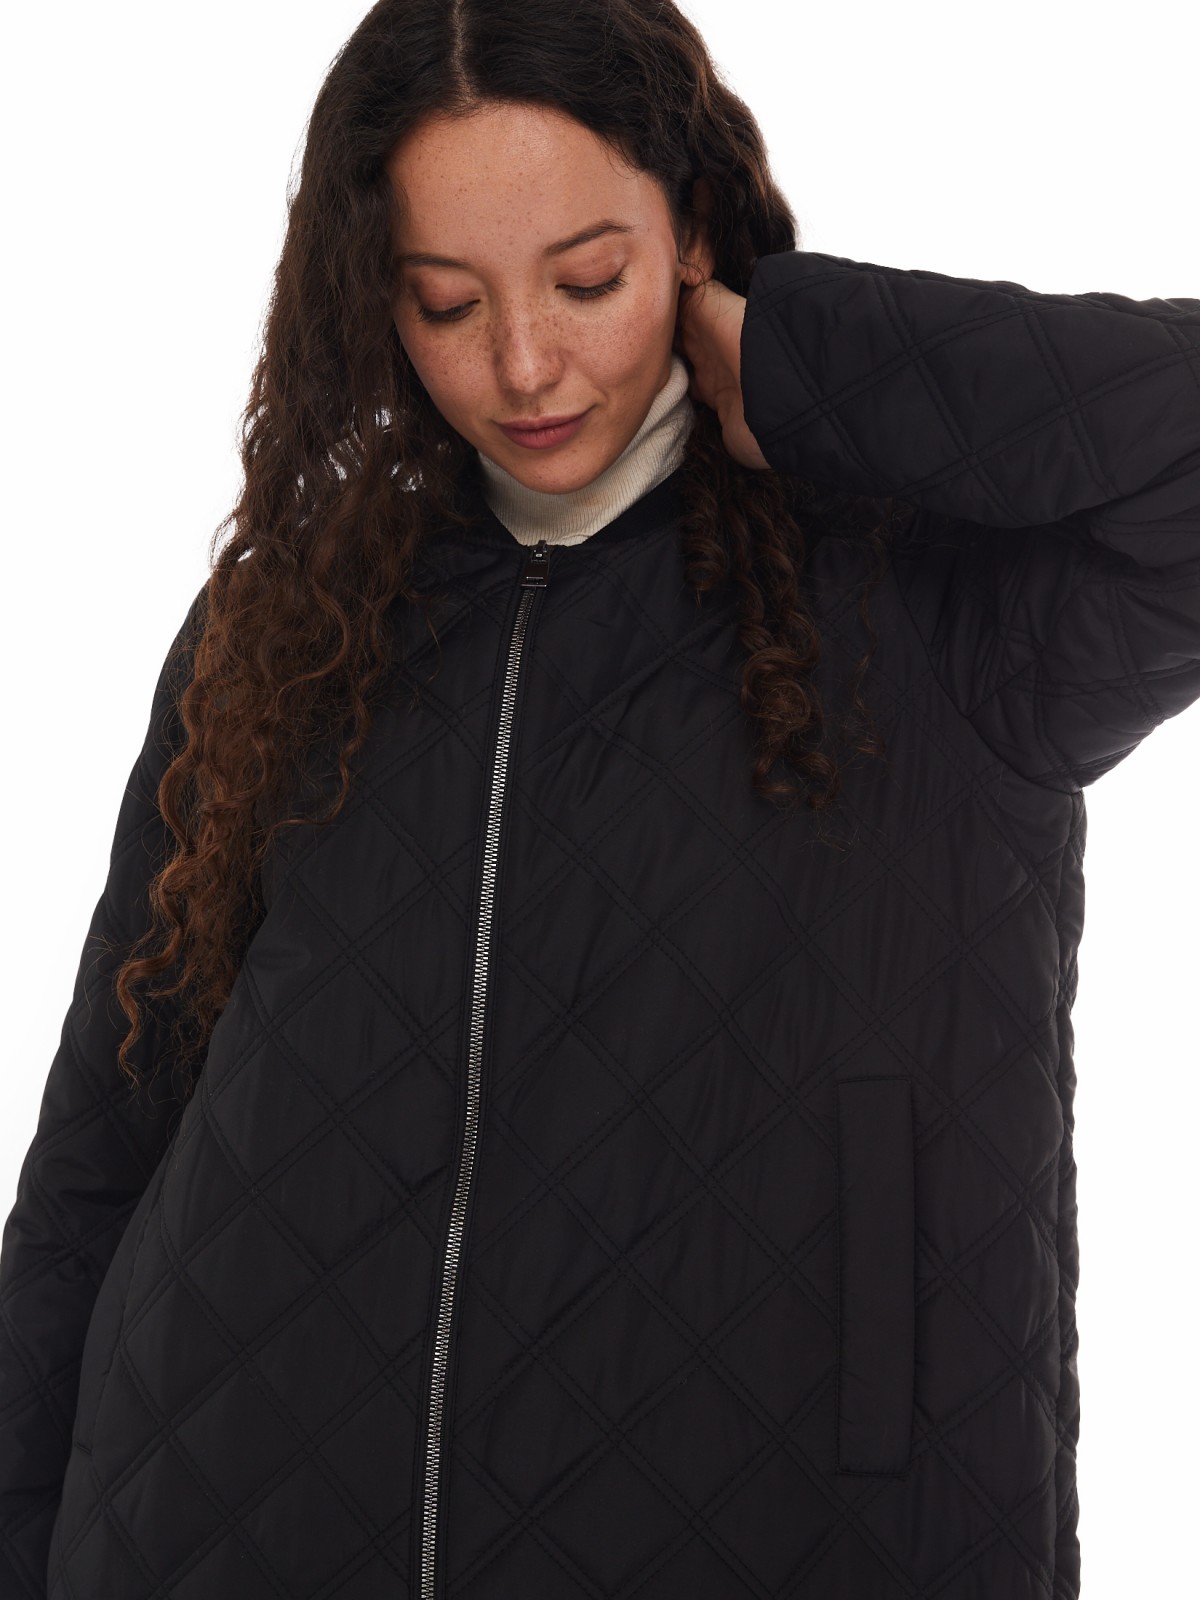 Утеплённое стёганое пальто-бомбер на синтепоне zolla 024125250044, цвет черный, размер XS - фото 4